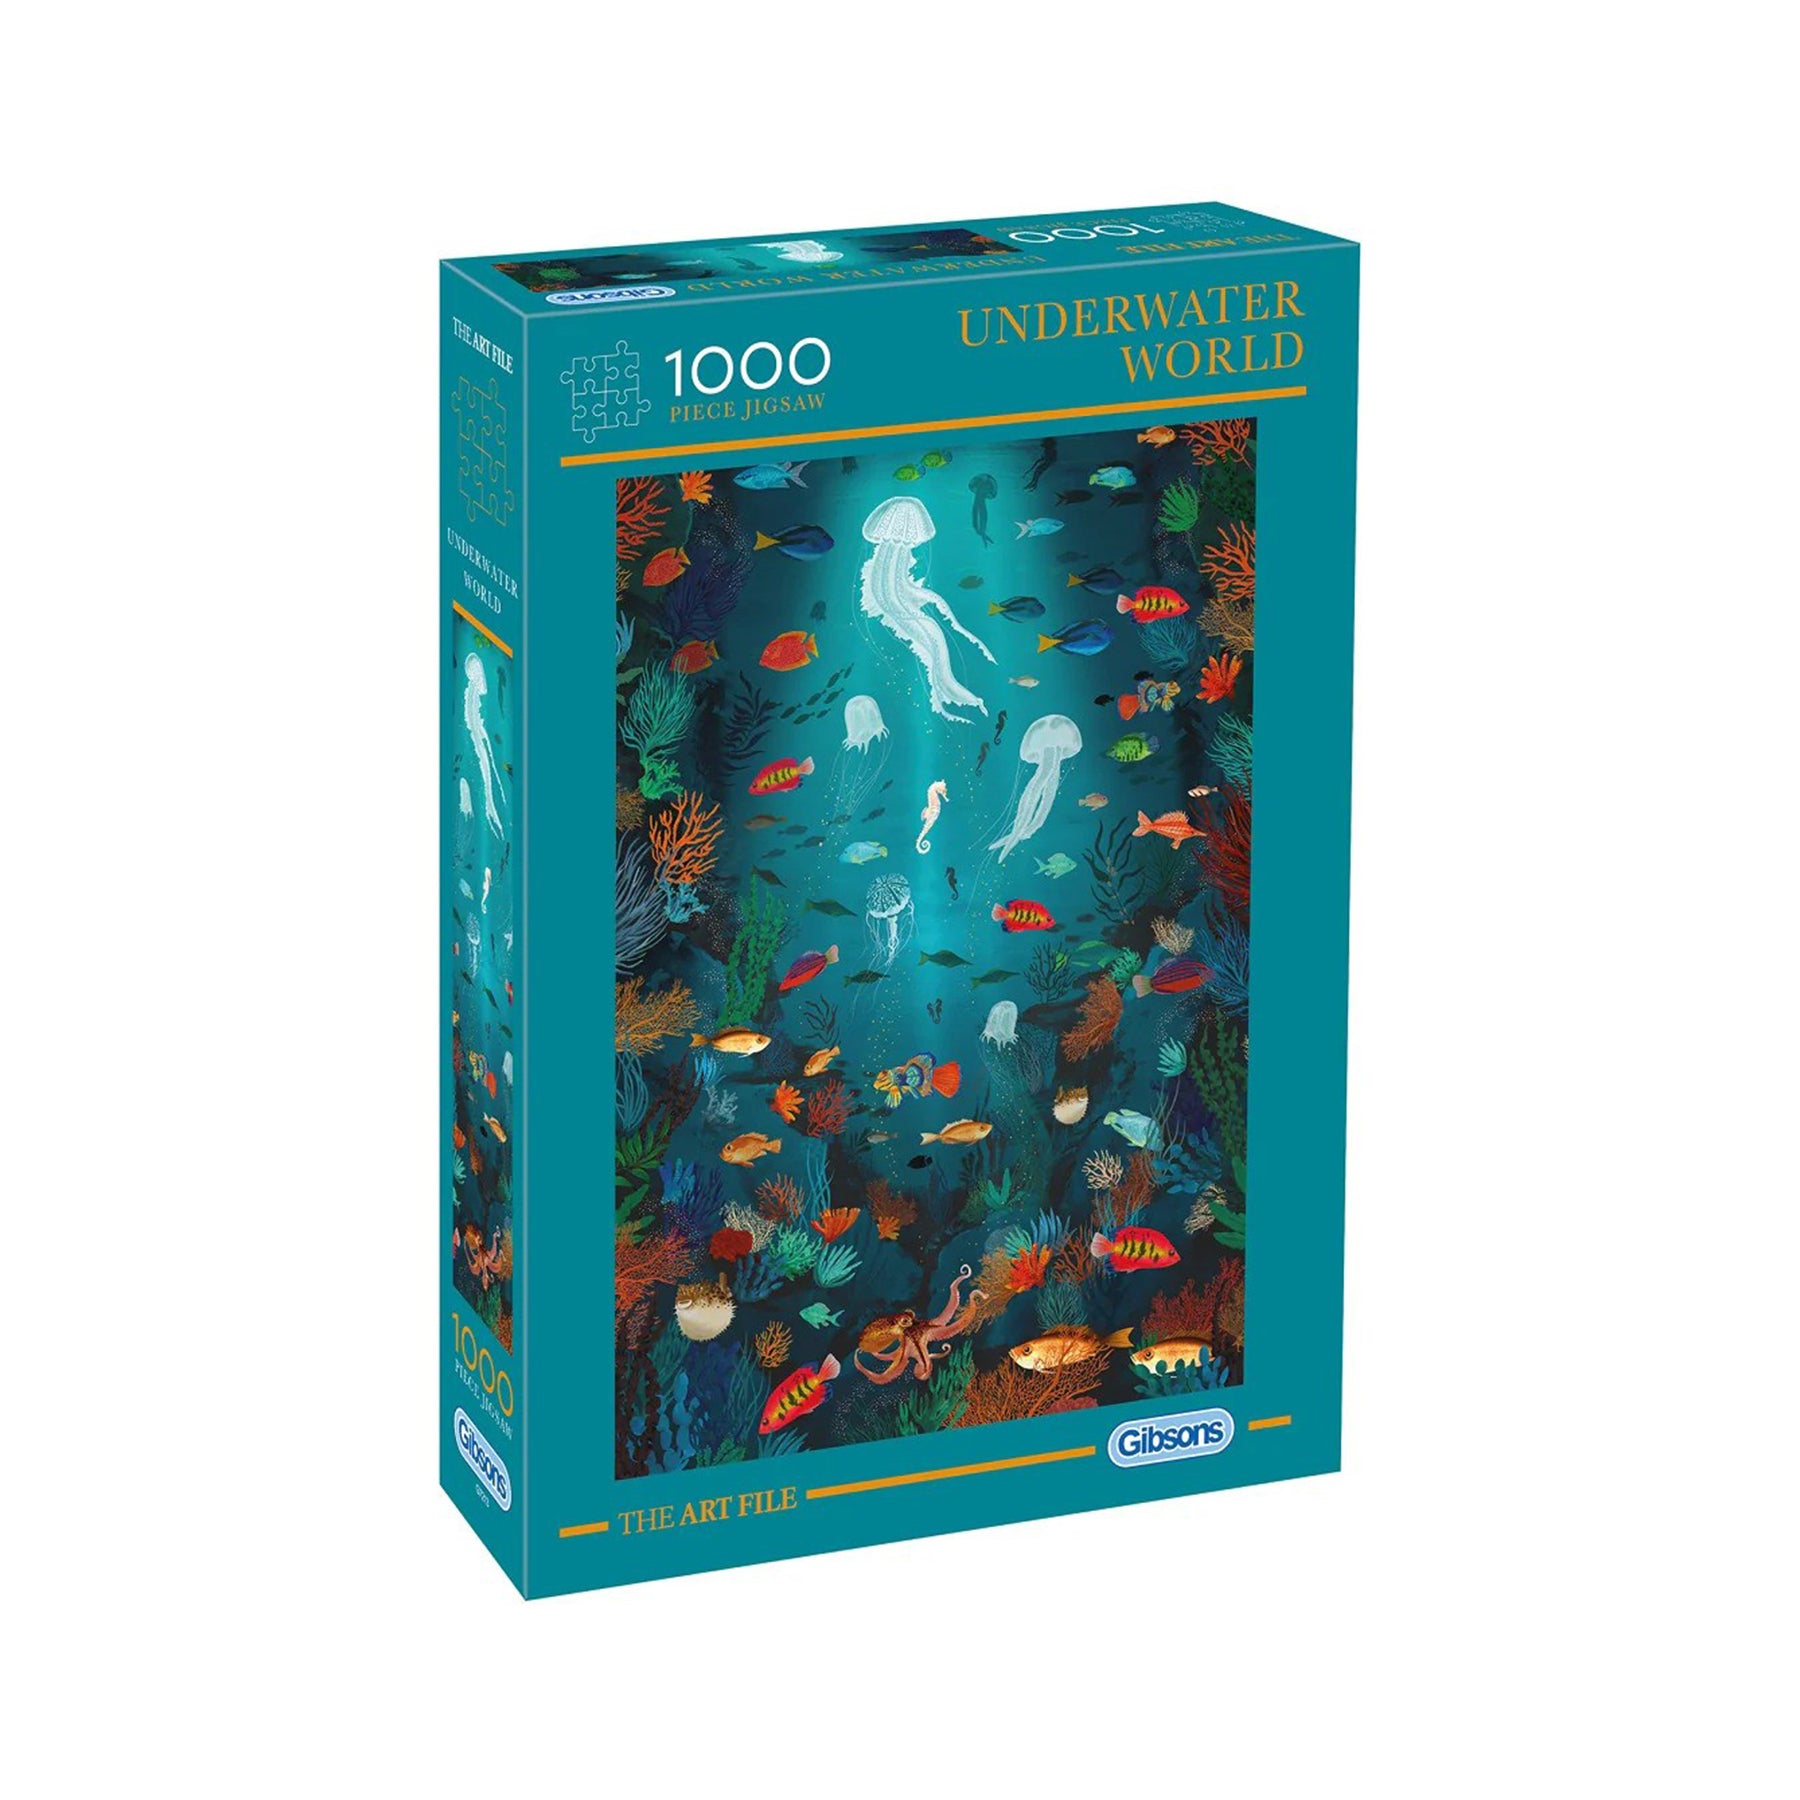 Underwater world 1000 piece jigsaw puzzle